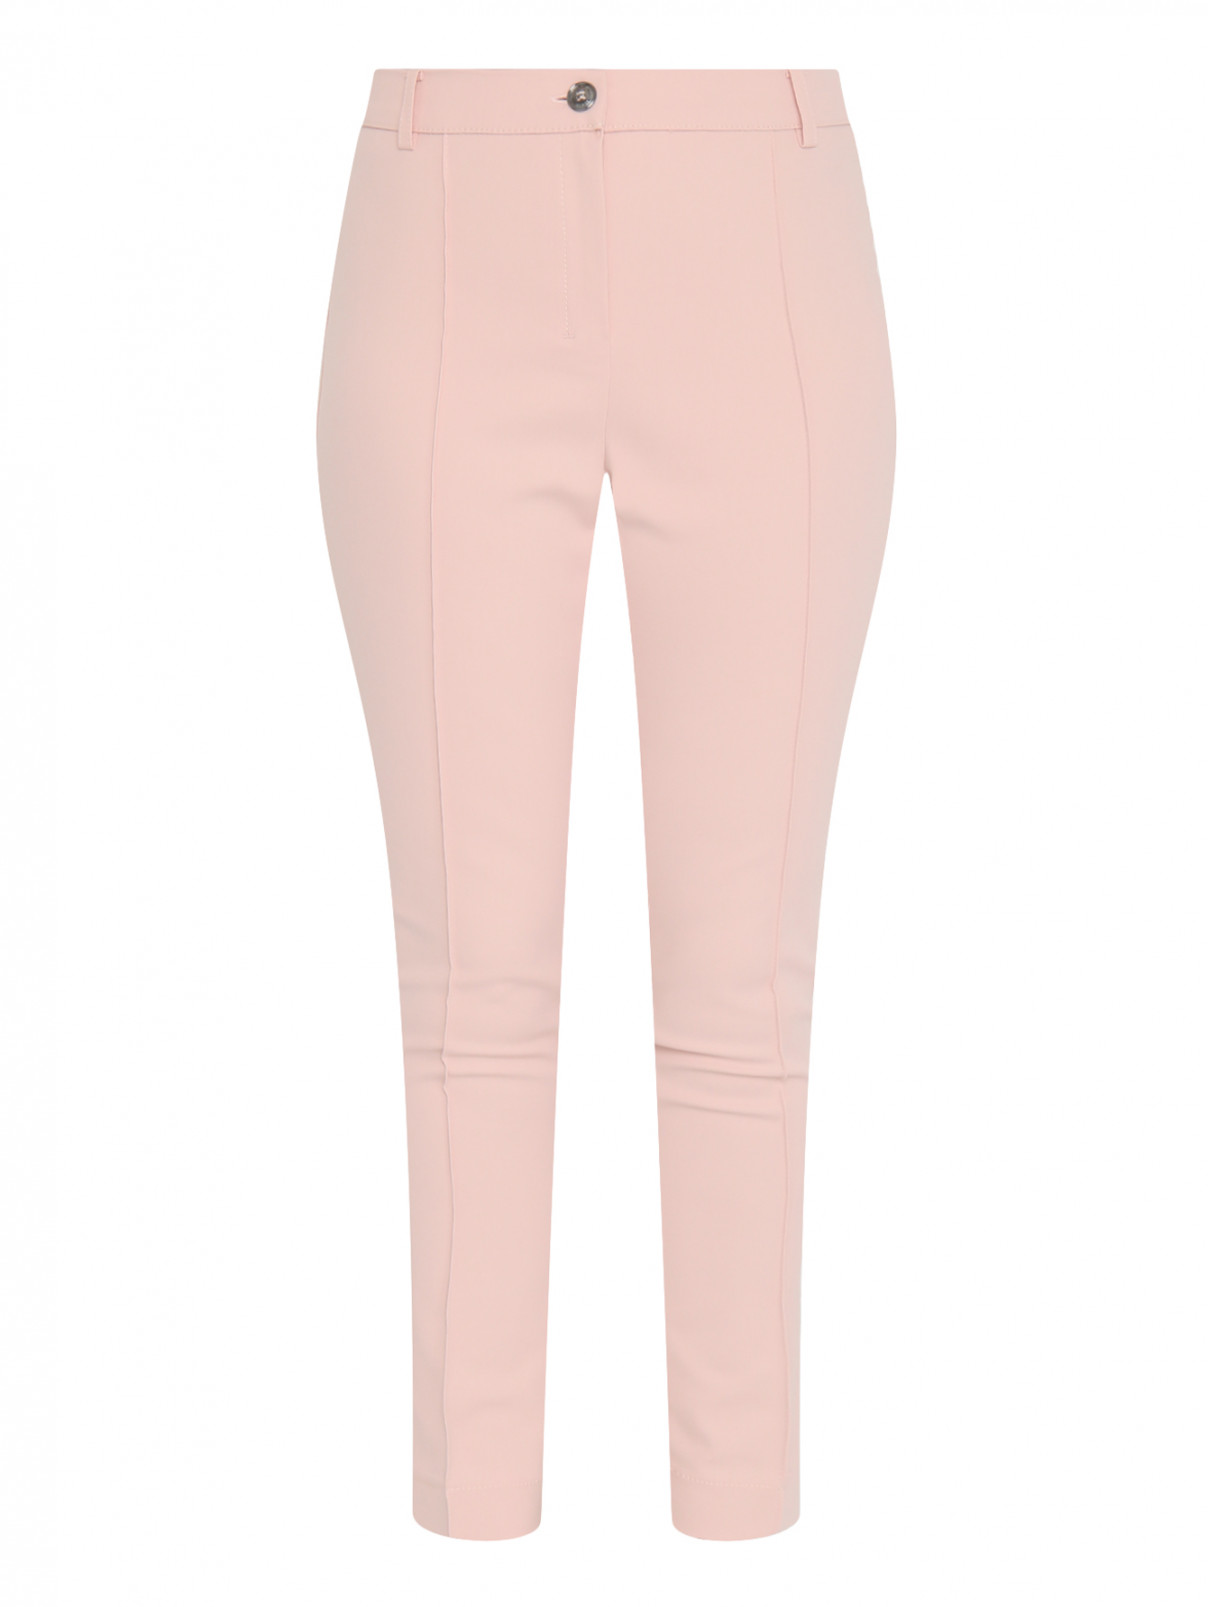 Укороченные брюки из хлопка Voyage by Marina Rinaldi  –  Общий вид  – Цвет:  Розовый